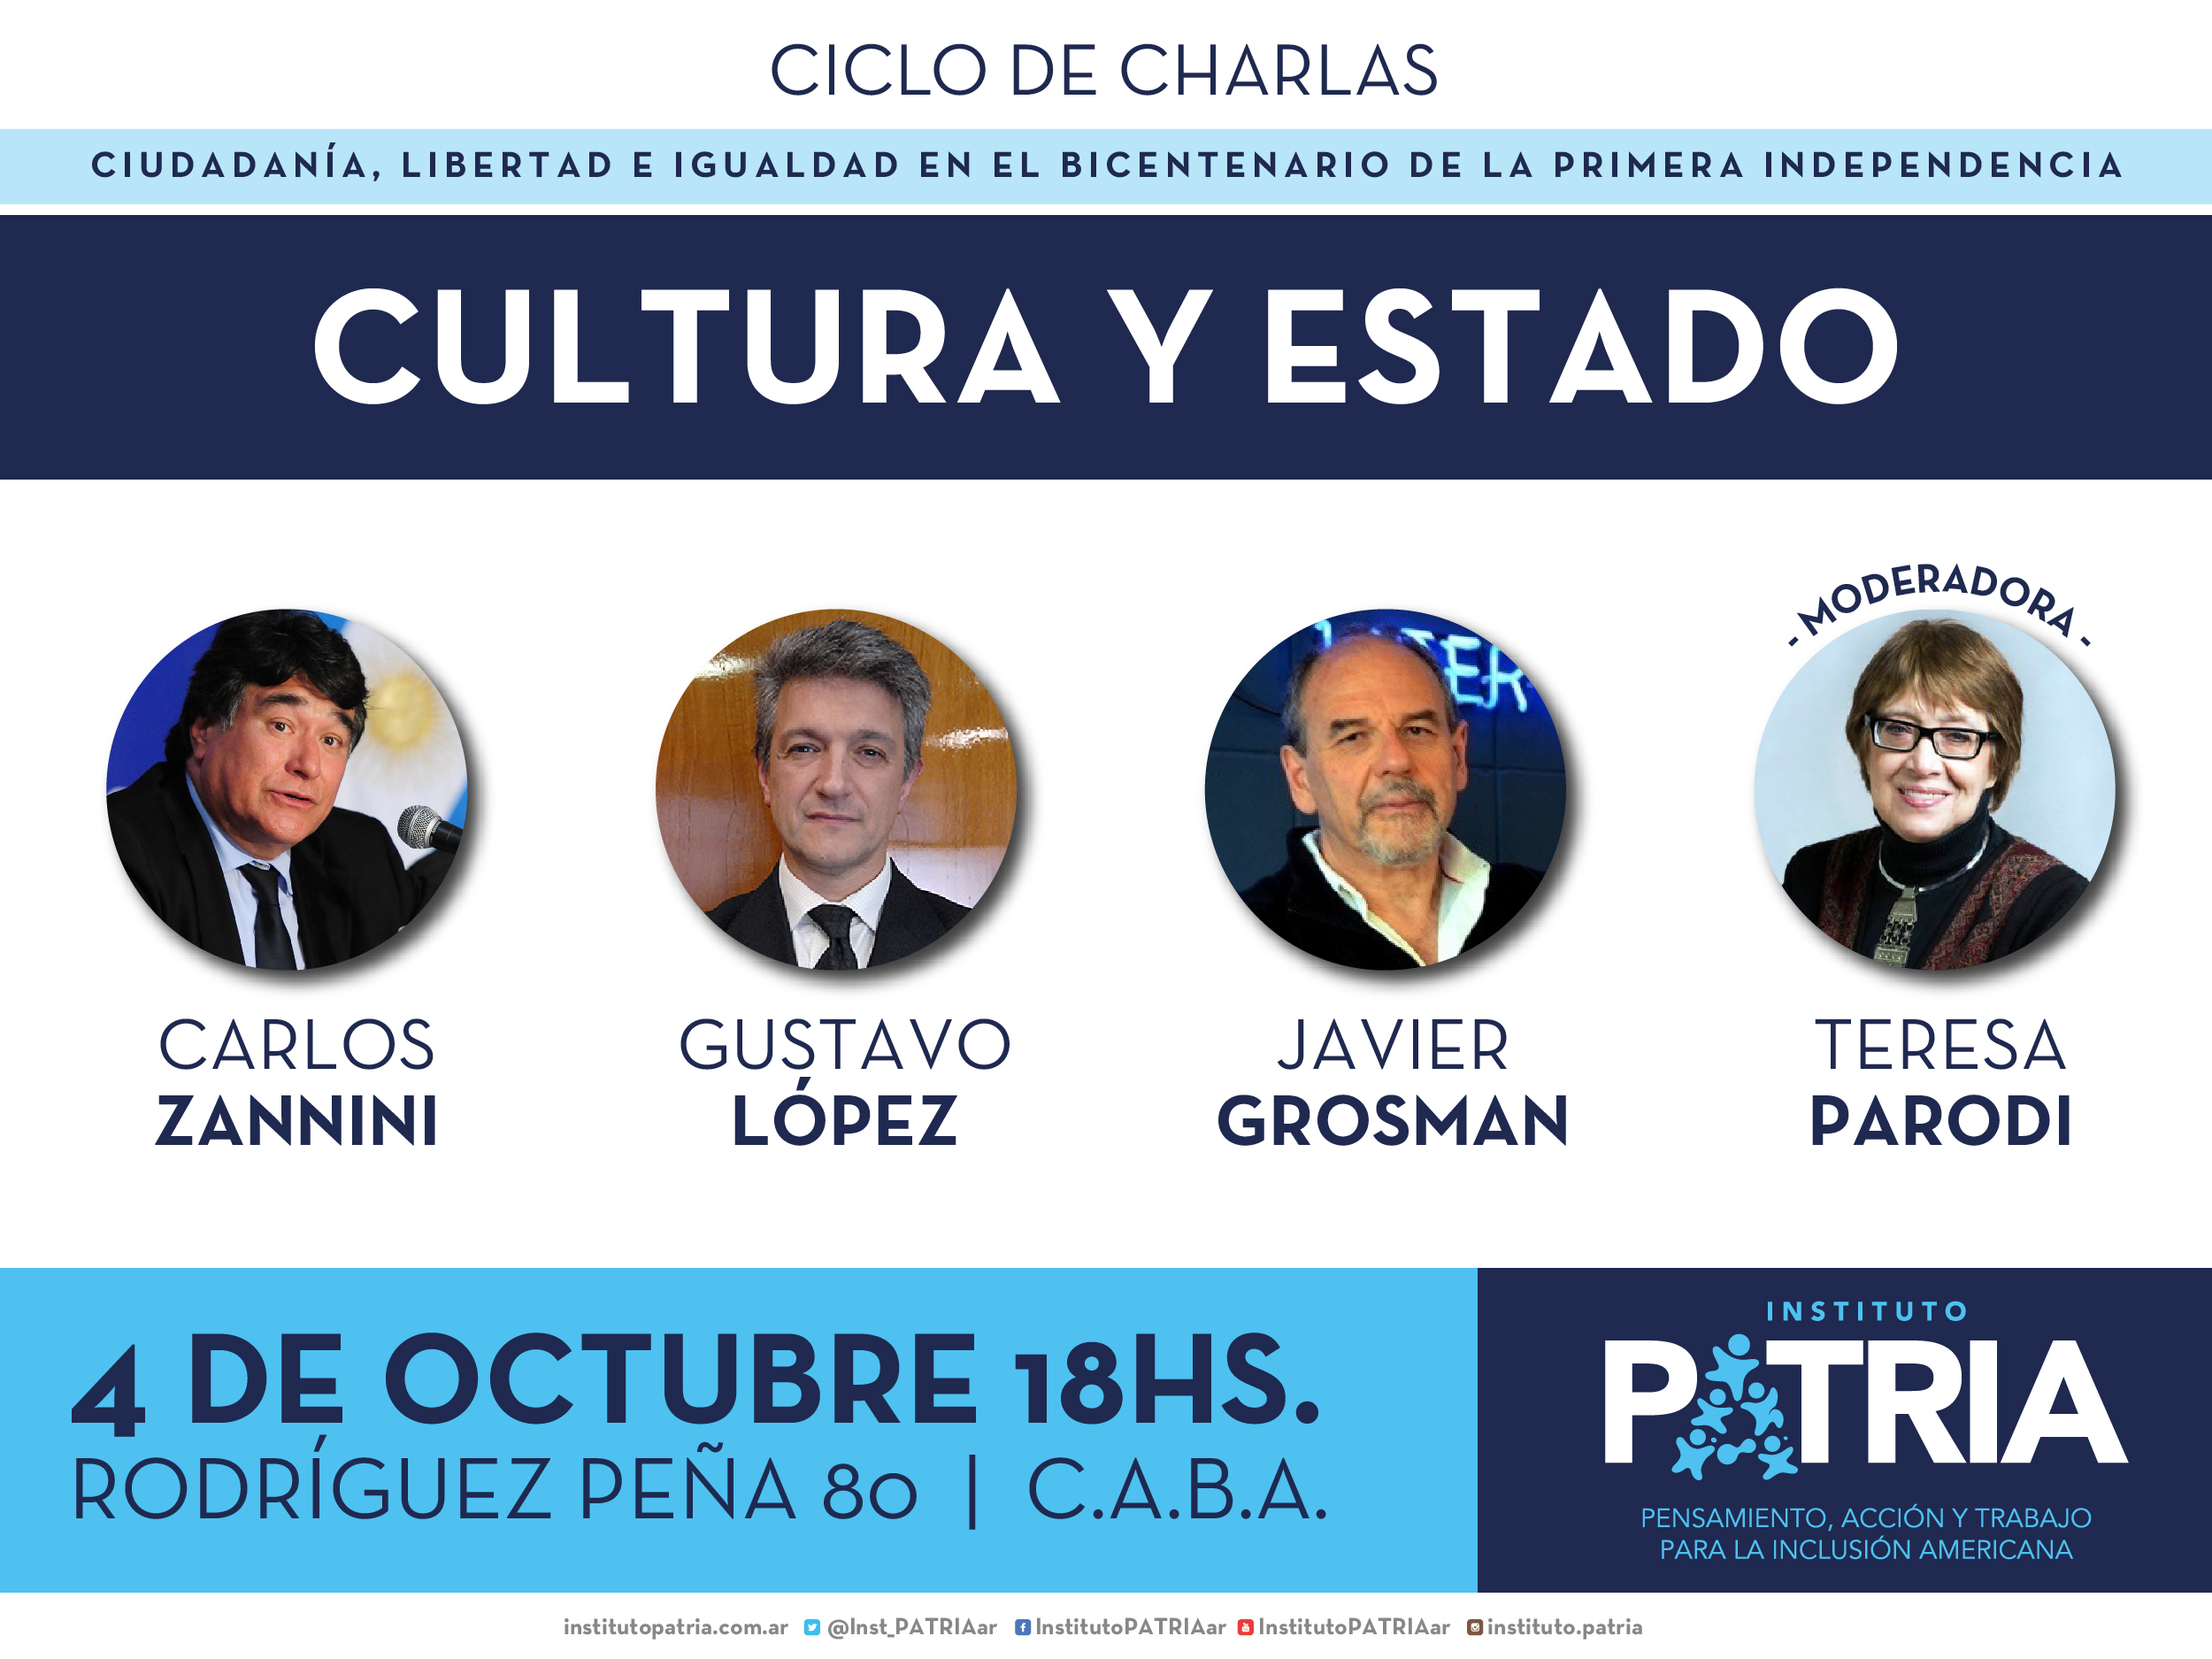 «Cultura y Estado»: Carlos Zannini, Gustavo López y Javier Grosman con la coordinación de Teresa Parodi